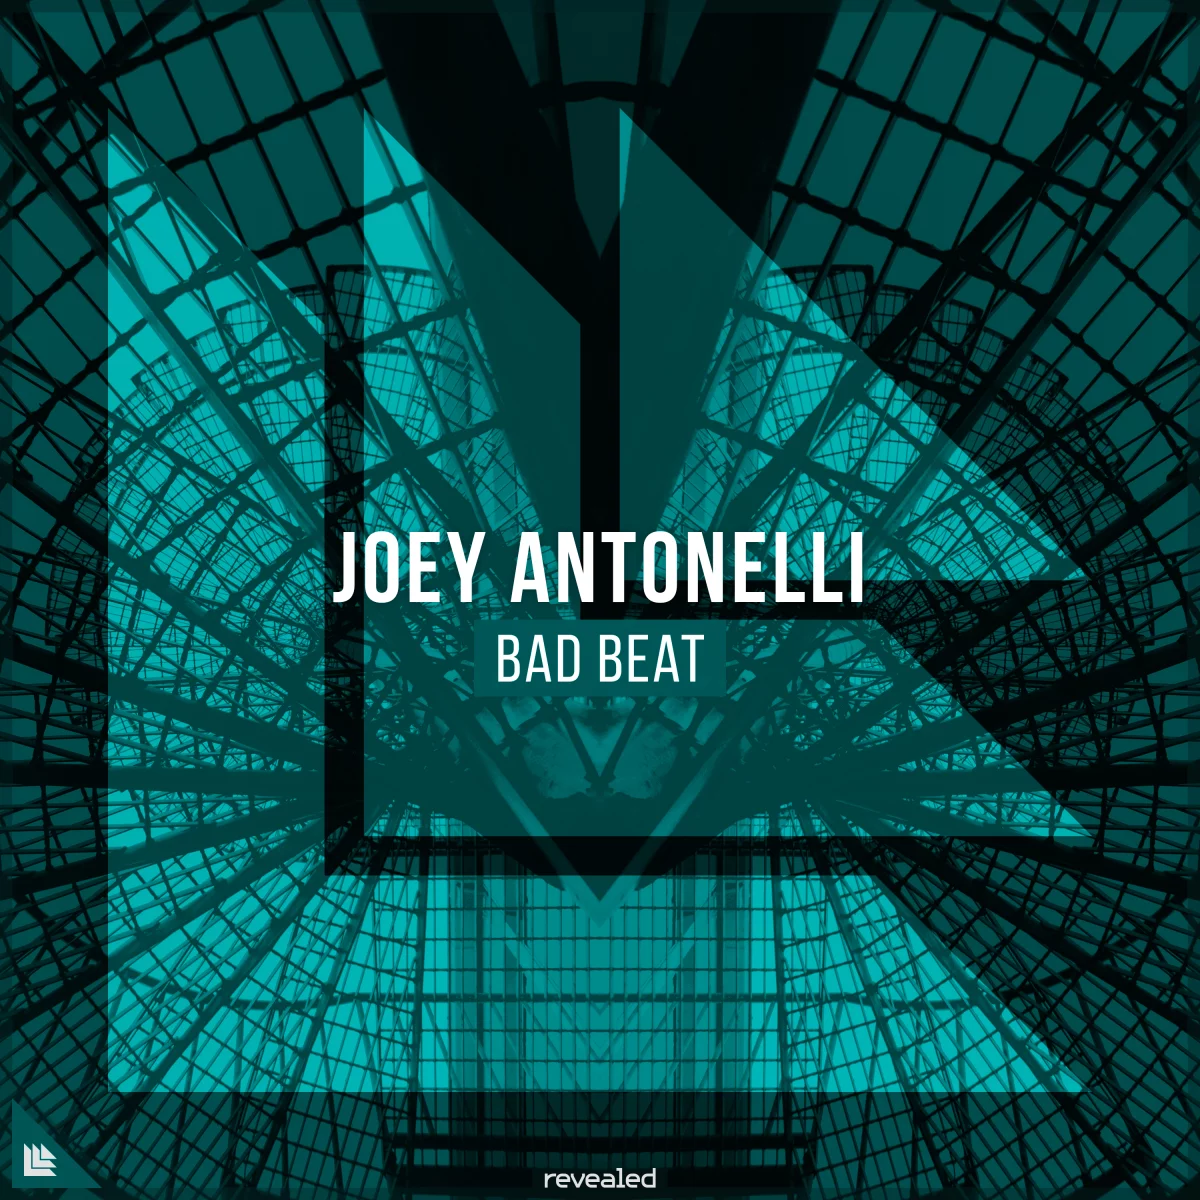 Bad Beat - Joey Antonelli⁠ 